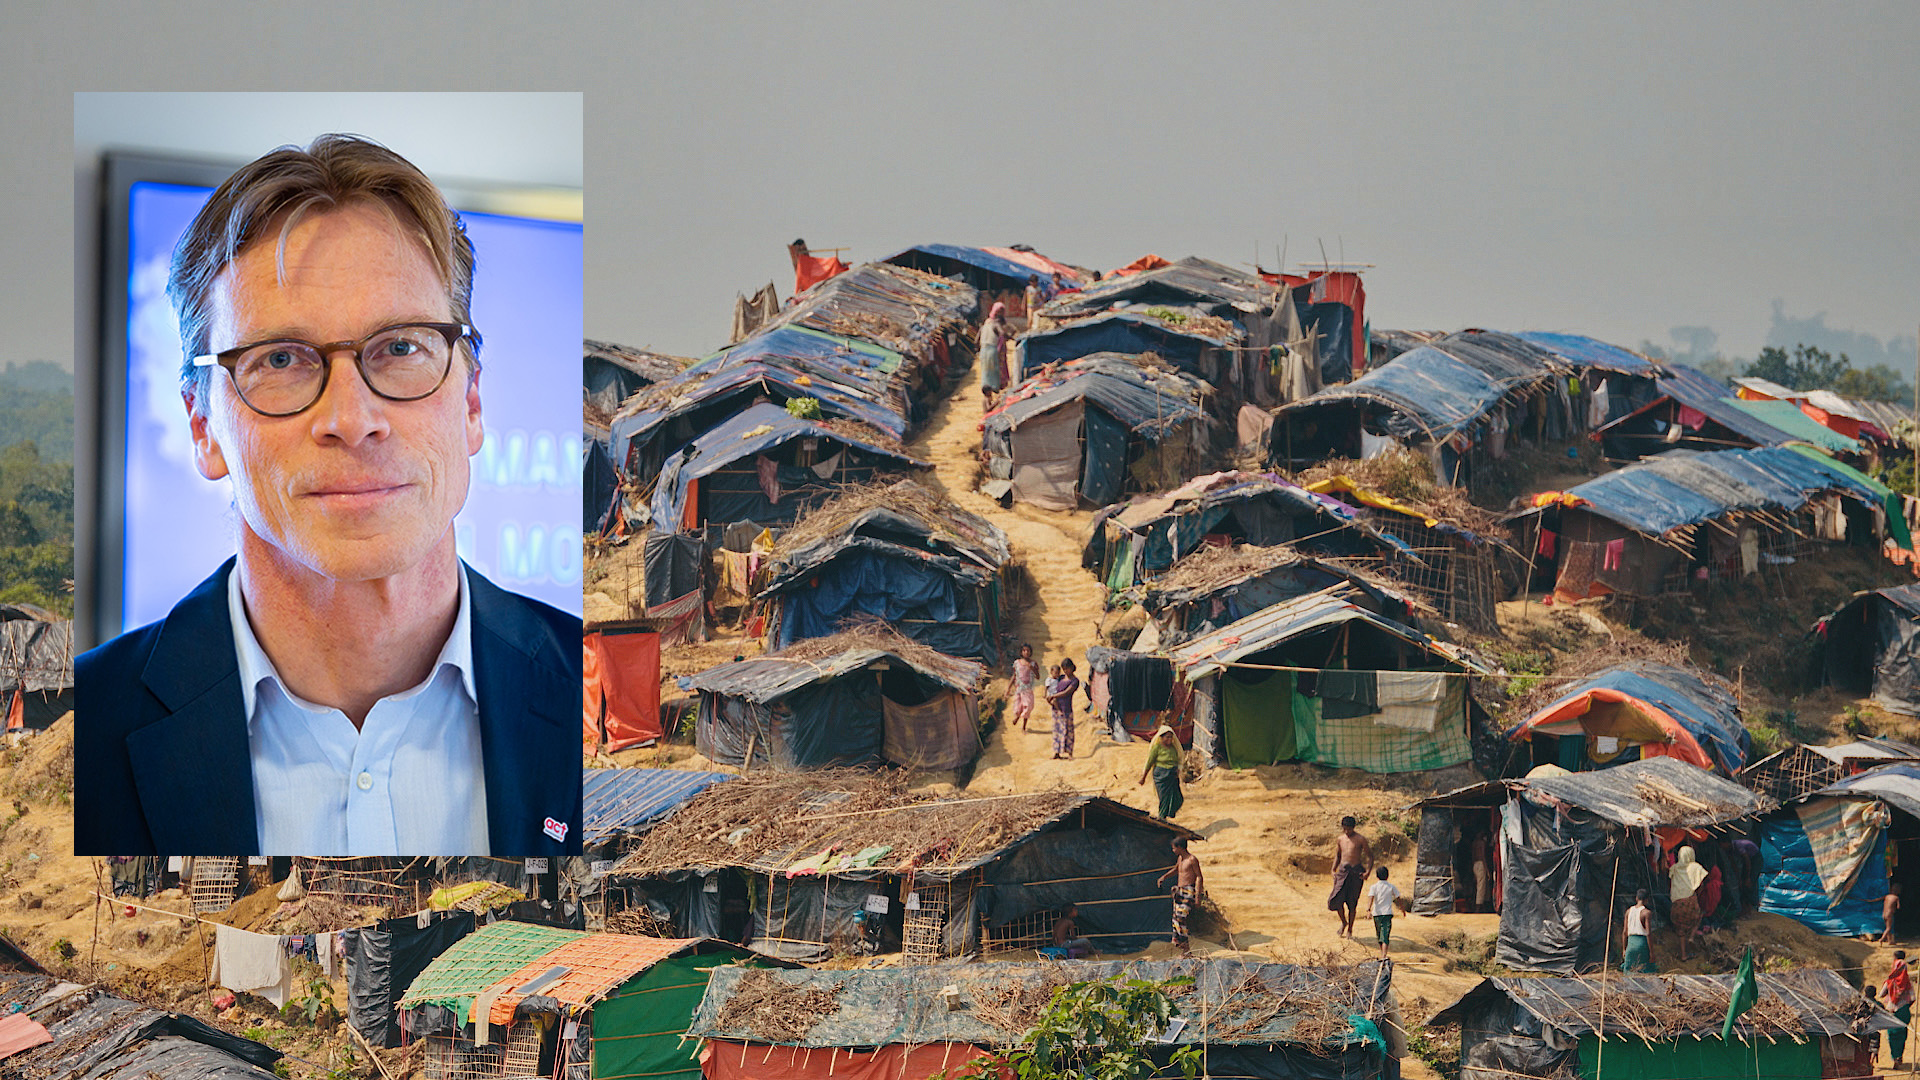 Montage med Erik lysén och flyktingläger i Bangladesh. 